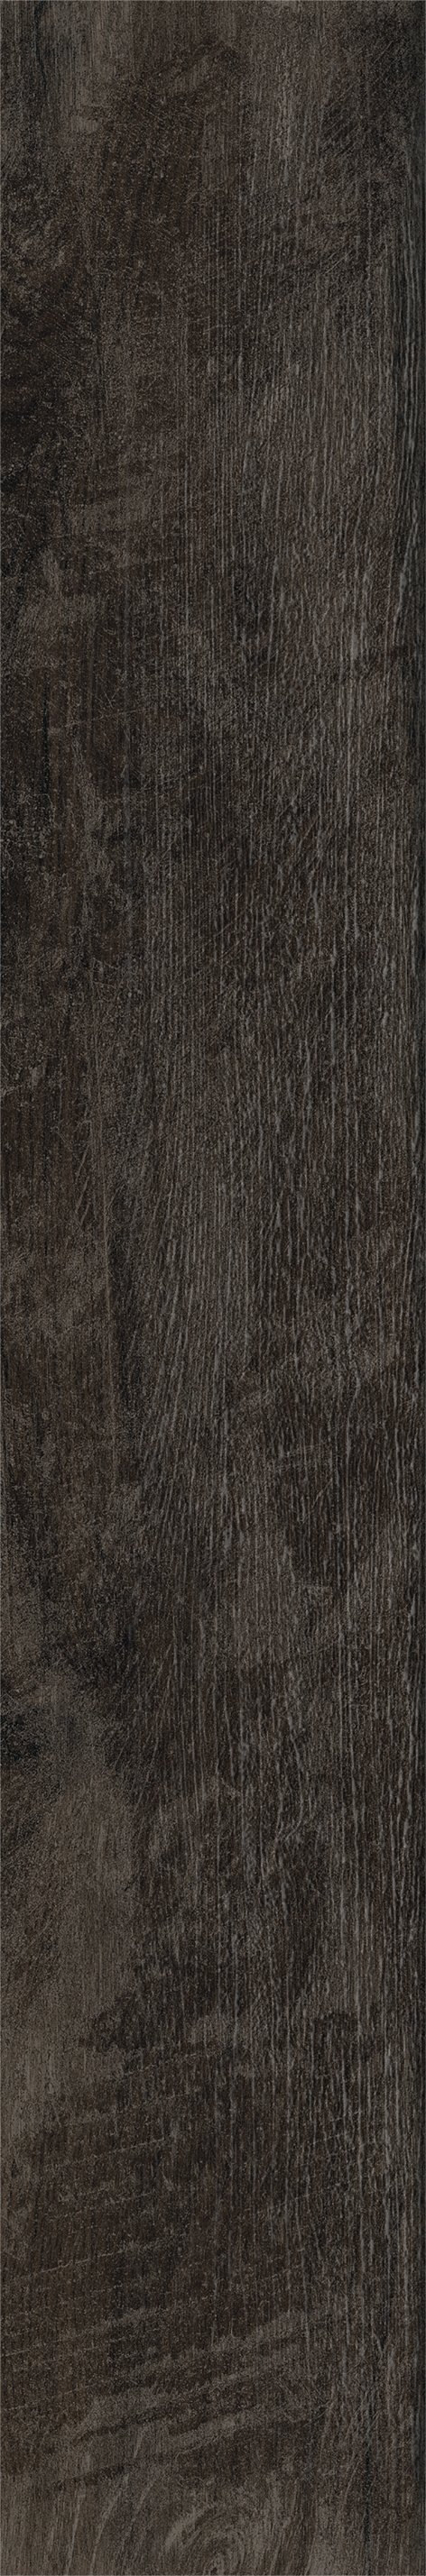 Плитка из керамогранита матовая Italon Грув 20x120 коричневый (610010001884) плитка из керамогранита матовая italon грув 20x120 коричневый 610010001884